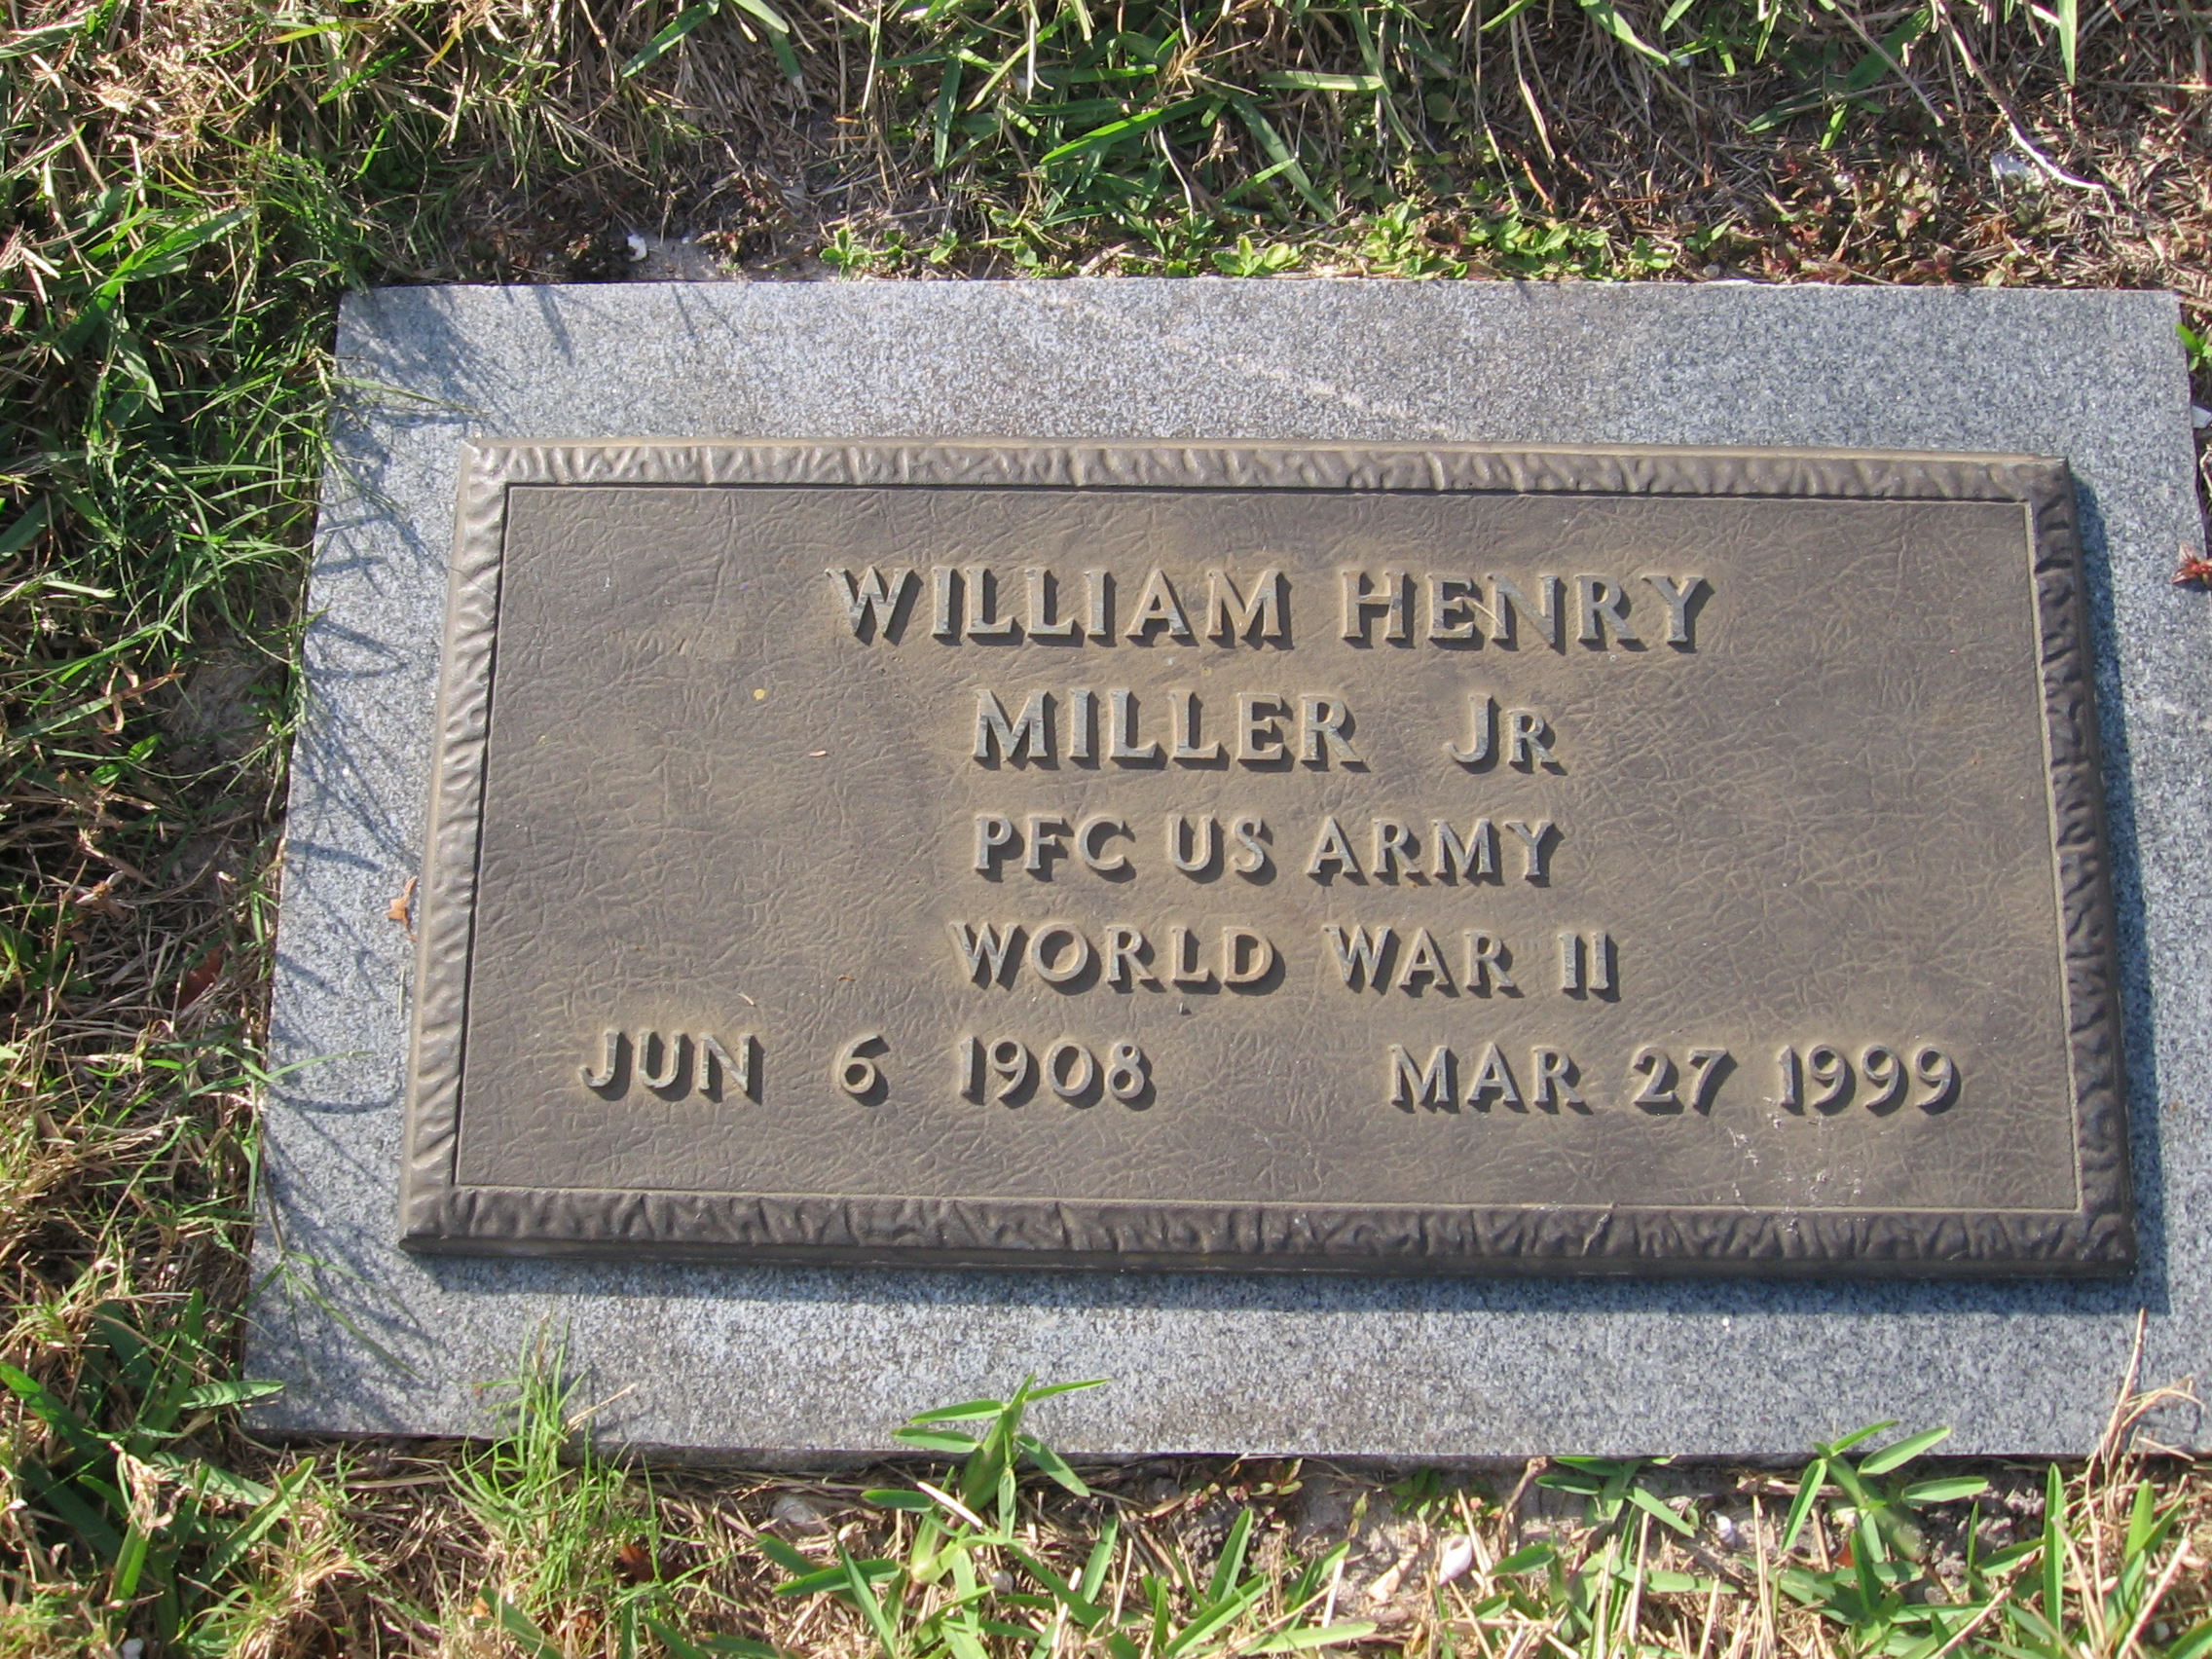 PFC William Henry, Jr